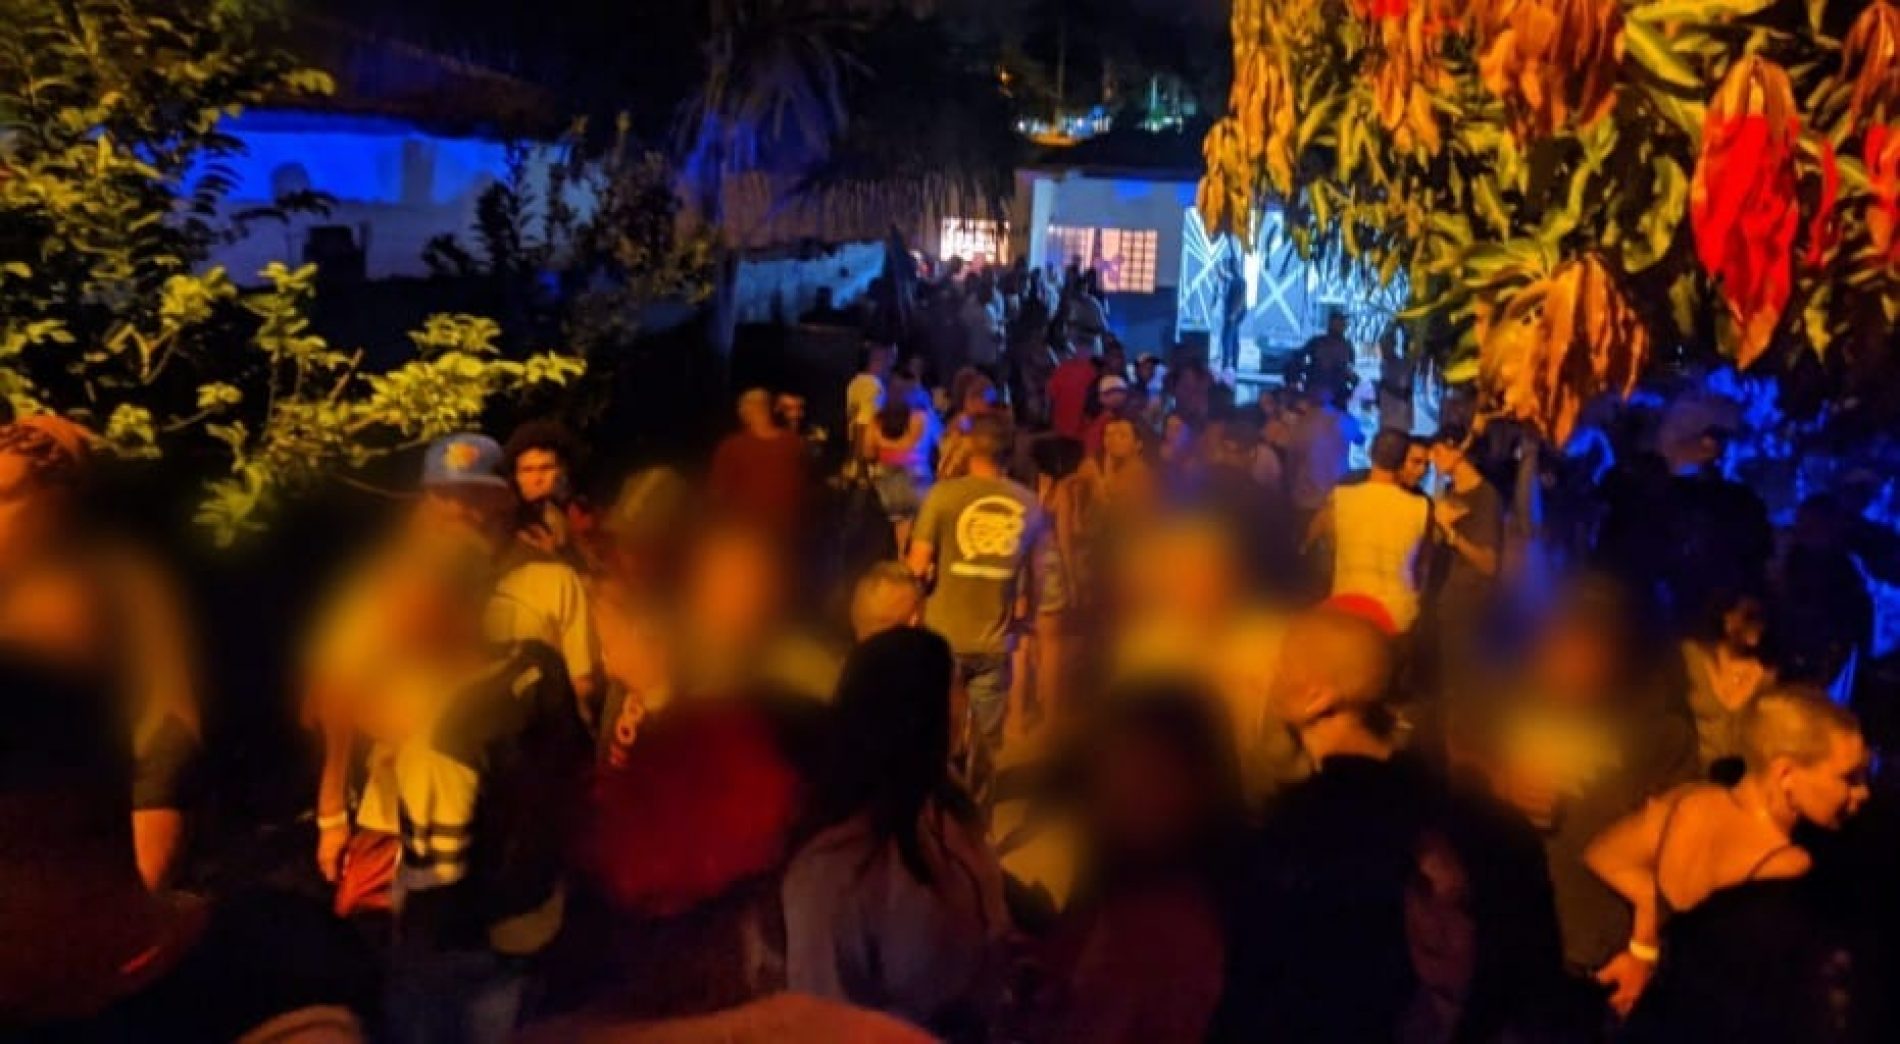 REGIÃO: GCM e Vara da Infância encerram três festas clandestinas no fim de semana